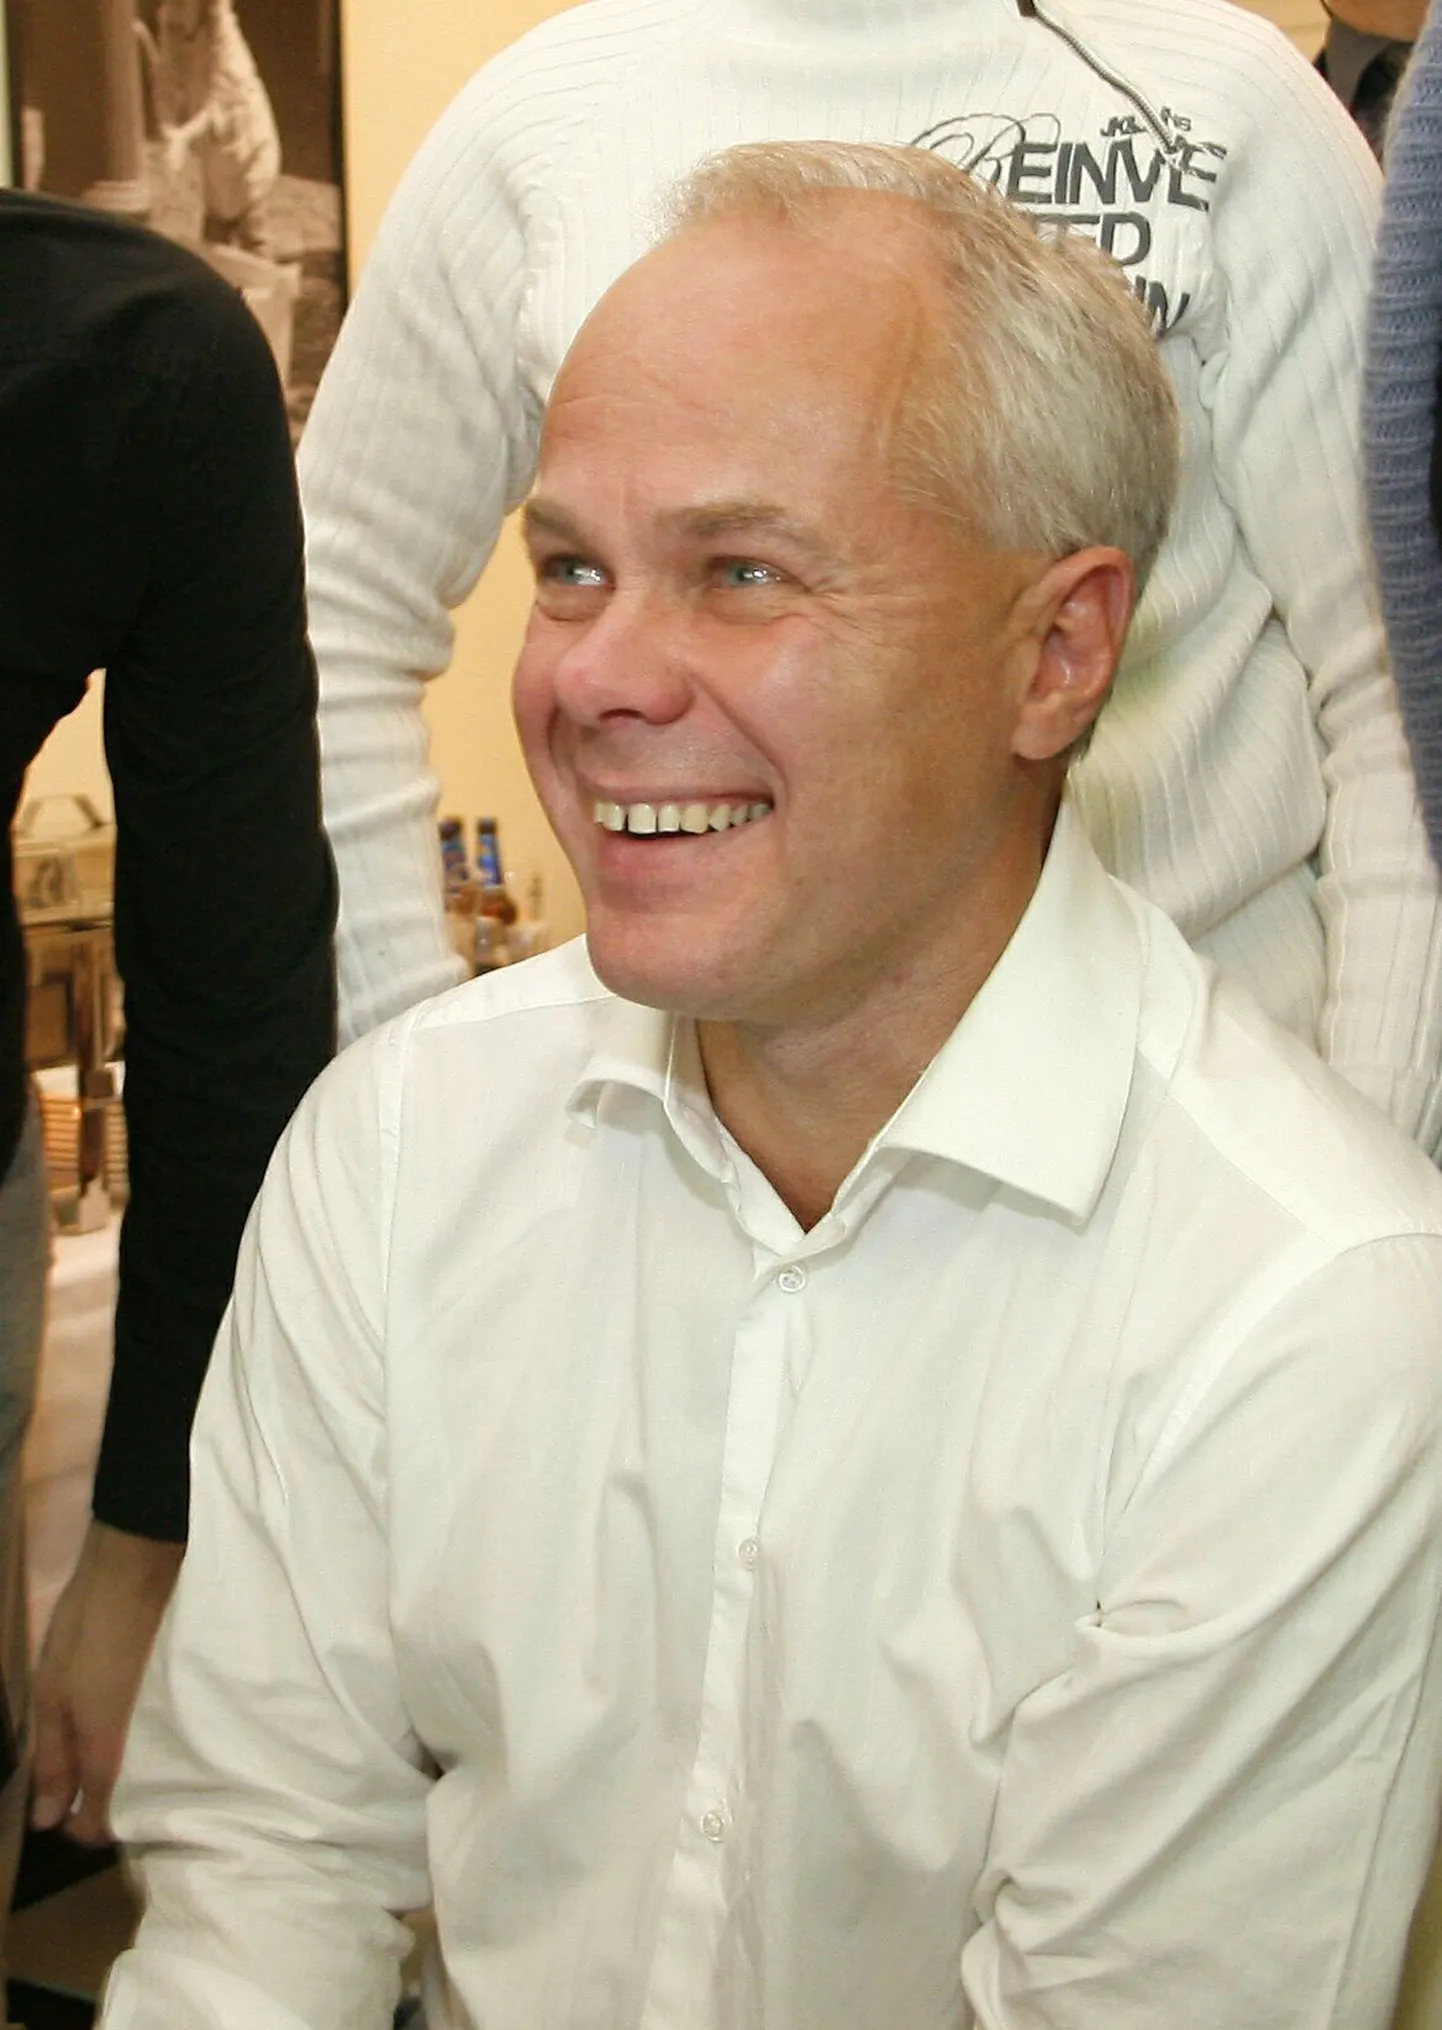 Enim hääli kogus Pärnus Toomas Kivimägi.